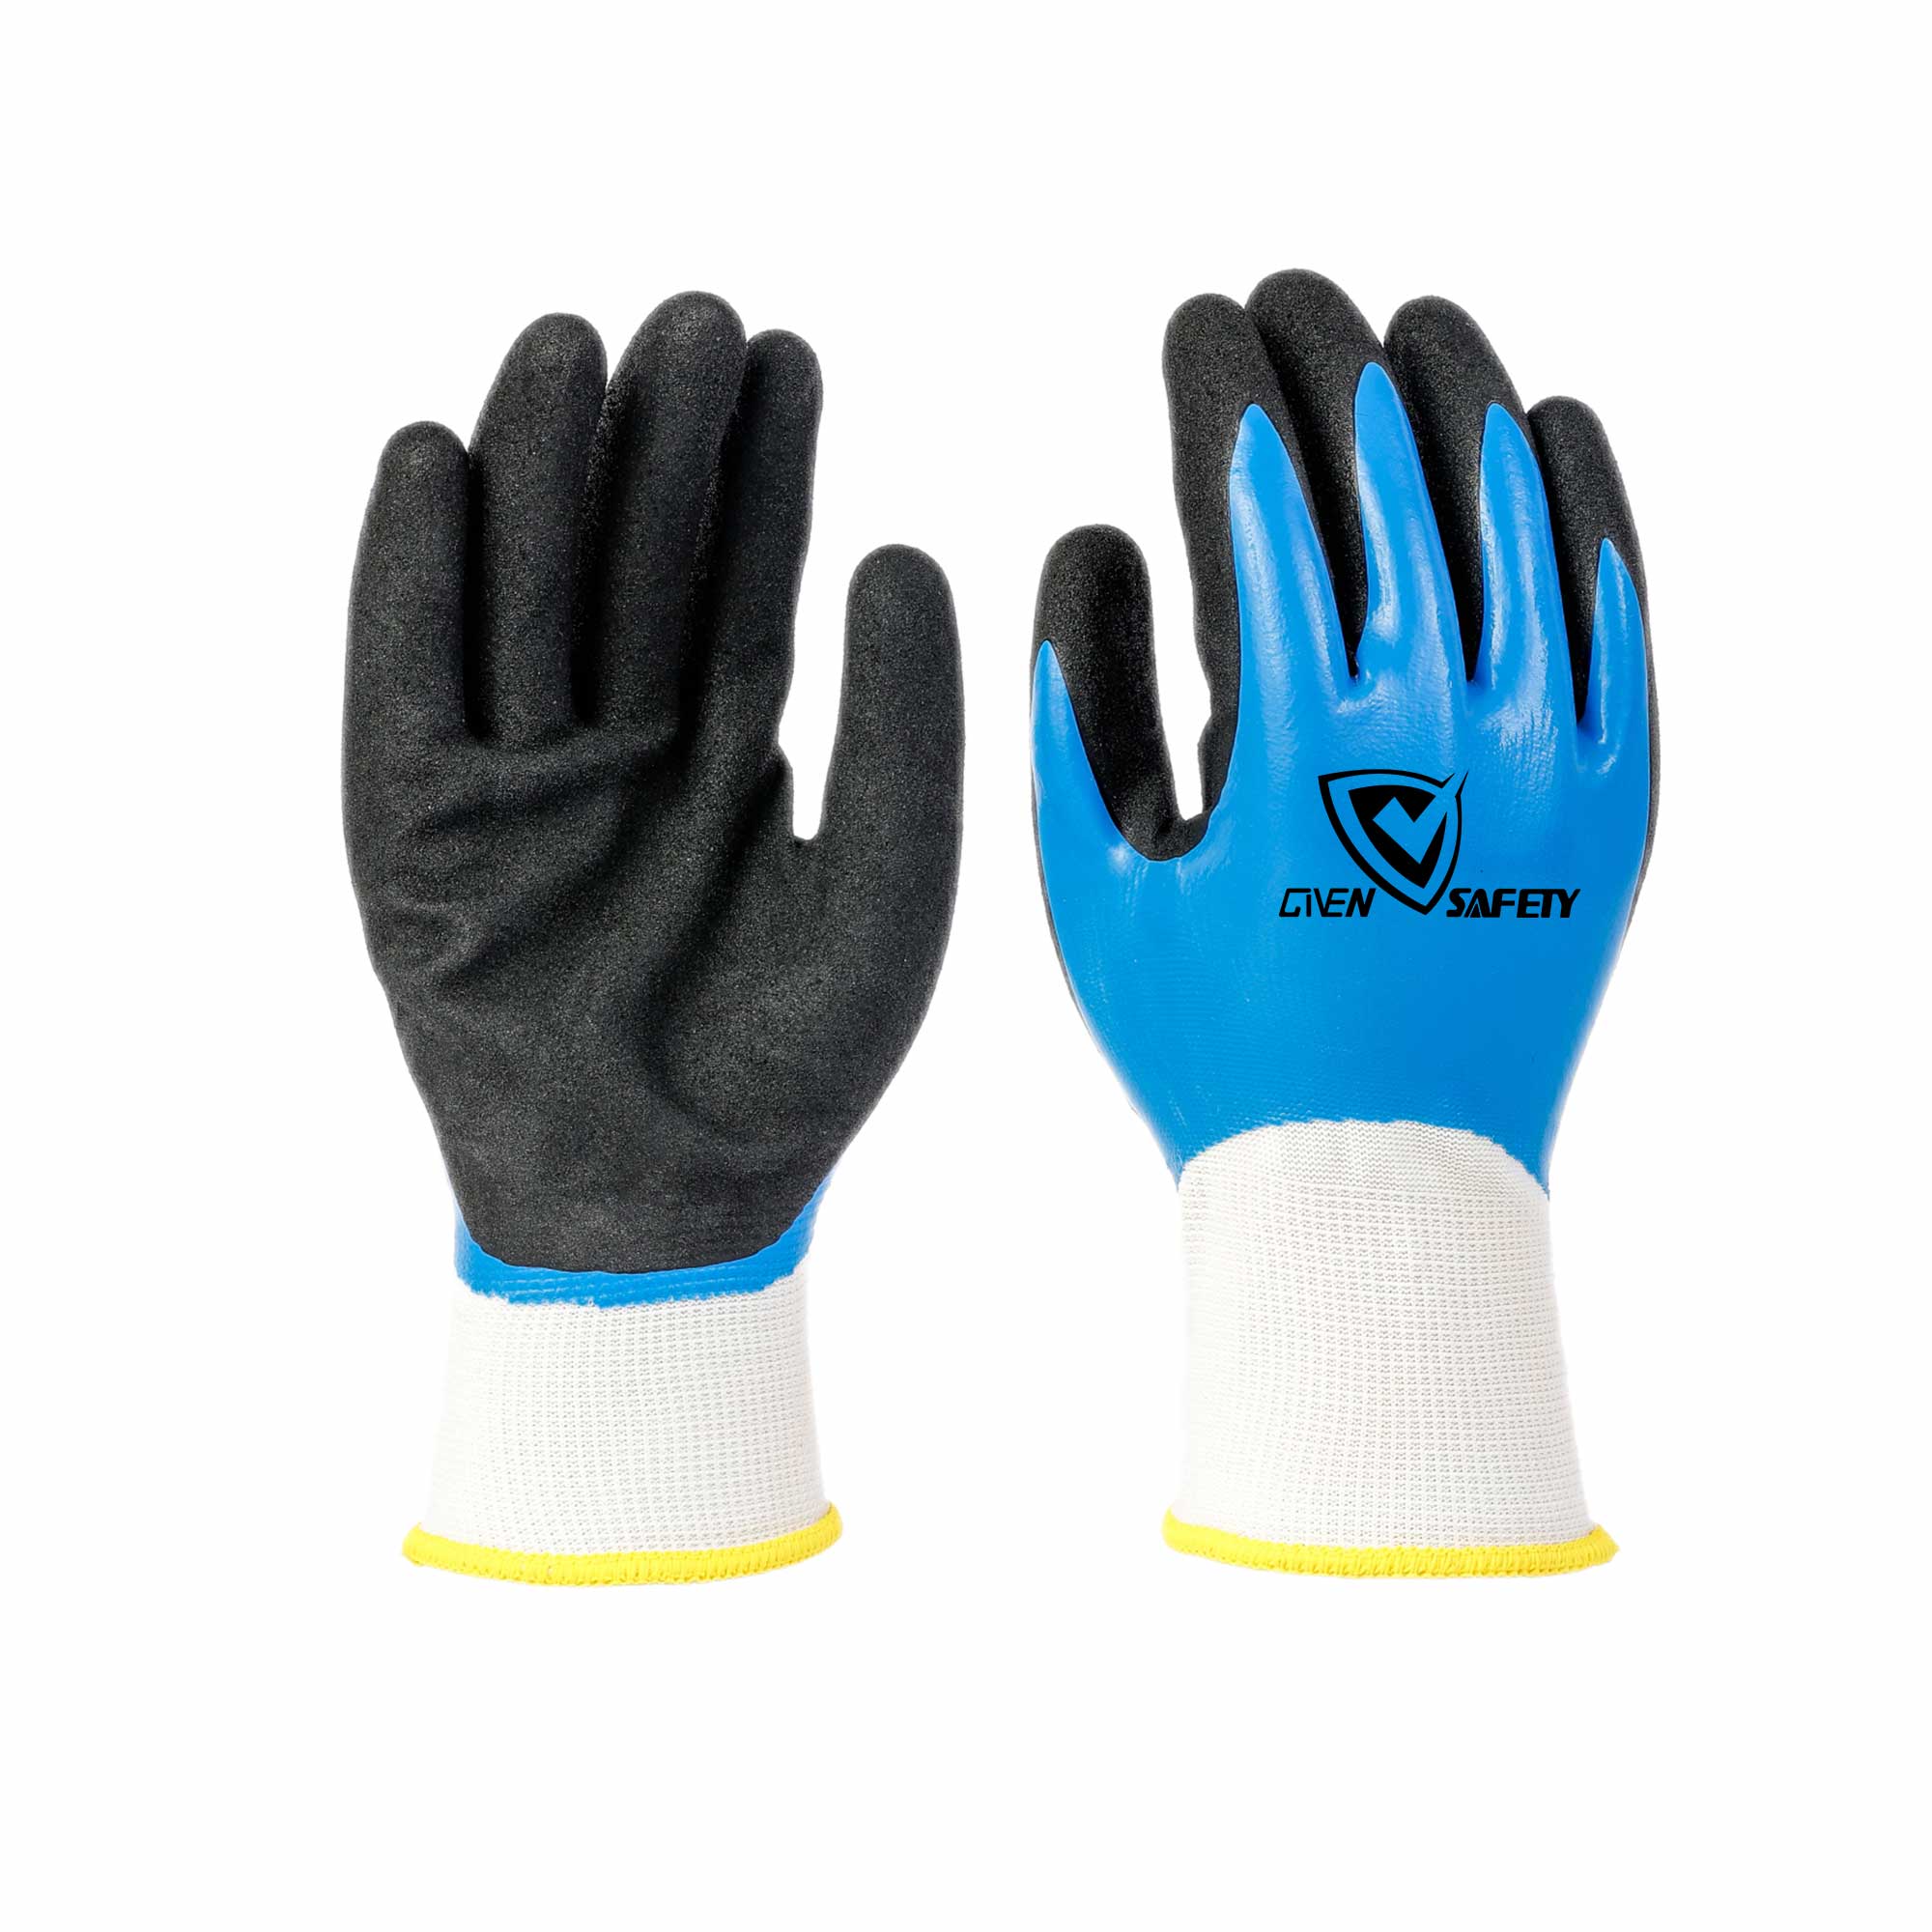 13G sandy nitrile coated waterproof work gloves